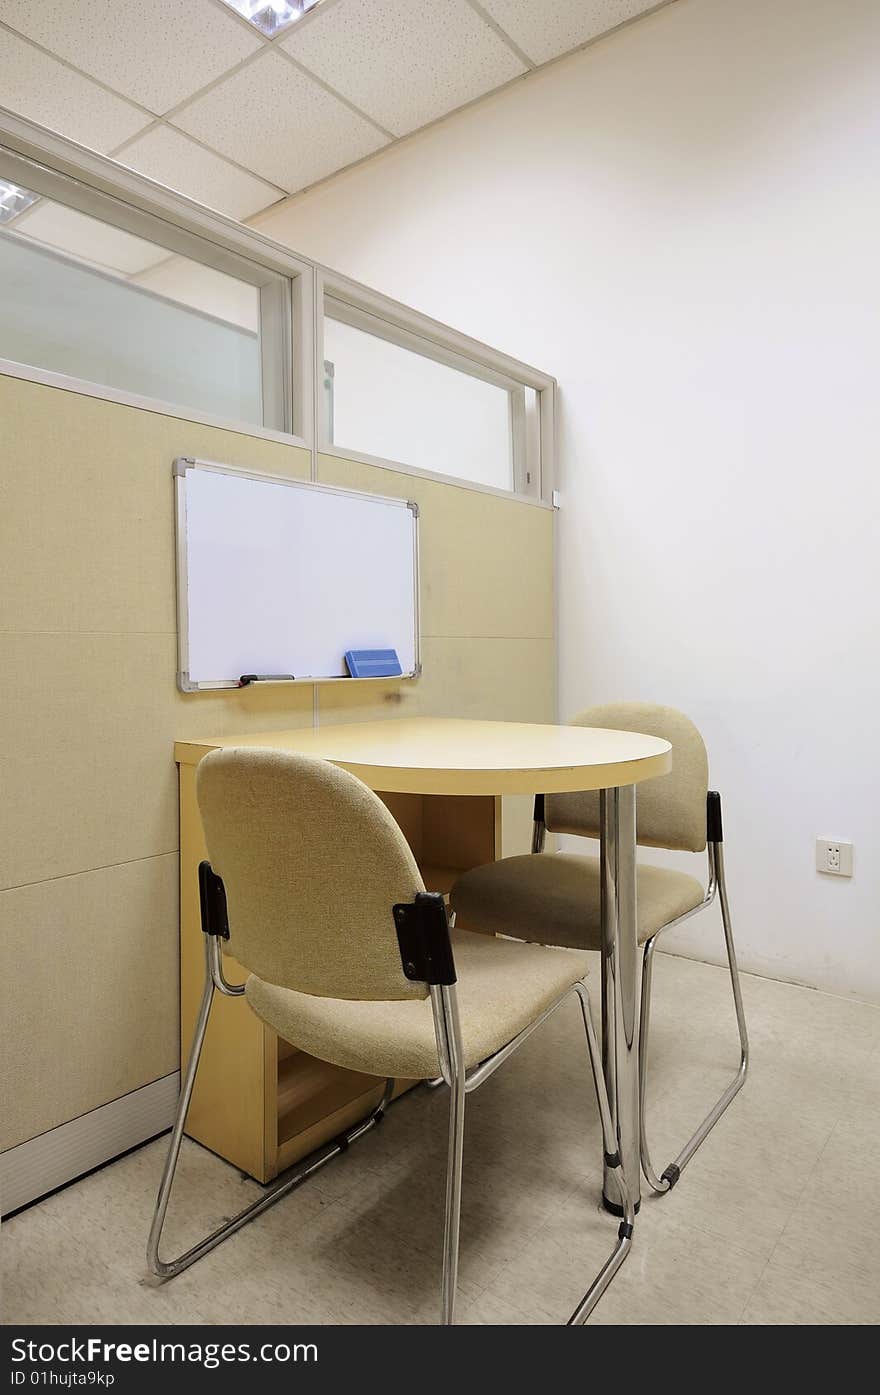 A empty classroom,no students